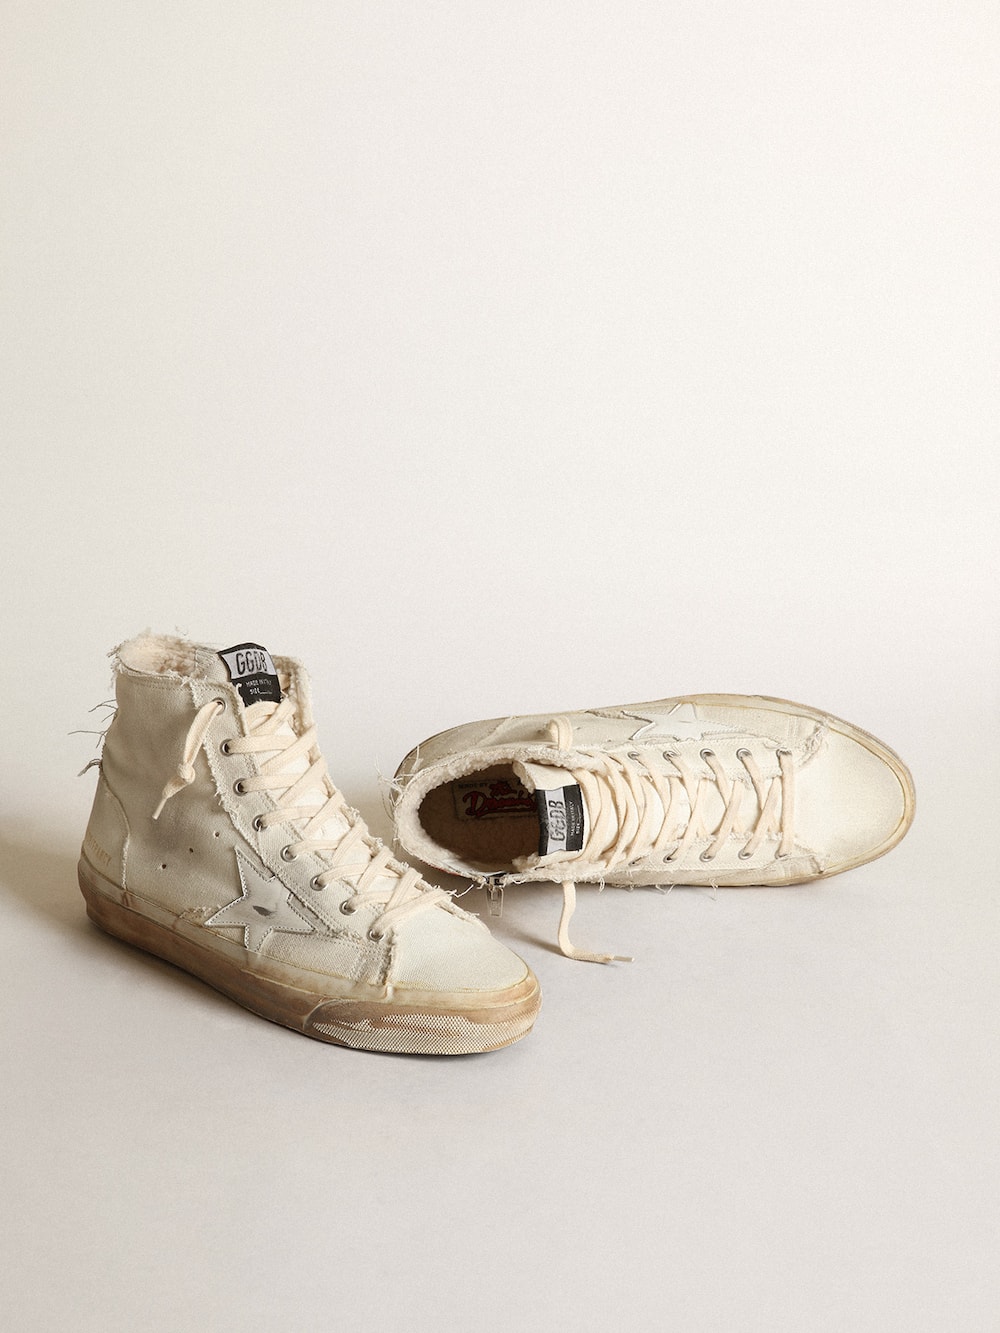 Golden Goose - Zapatillas deportivas Francy de lona color marfil con estrella de piel blanca in 